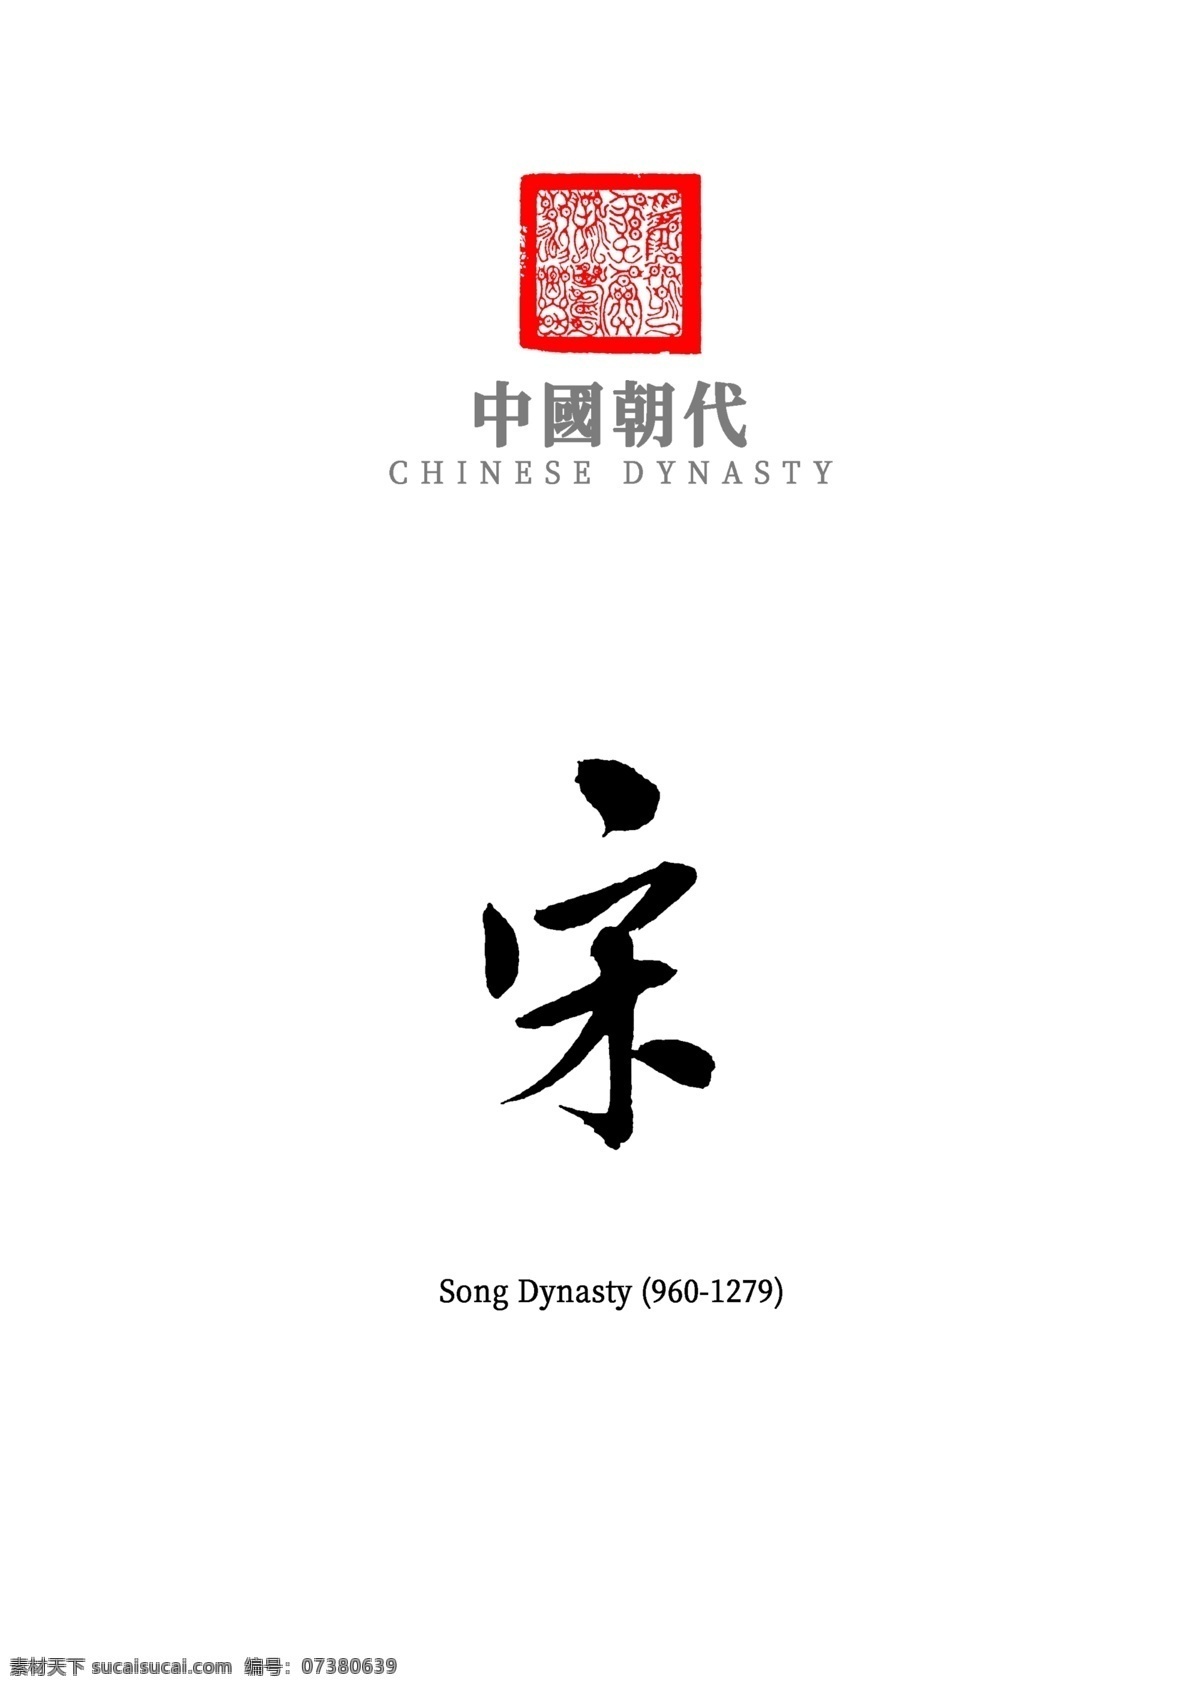 中国朝代宋 中国朝代 古代 书法 字体 手写字体 宋 朝代 文化艺术 绘画书法